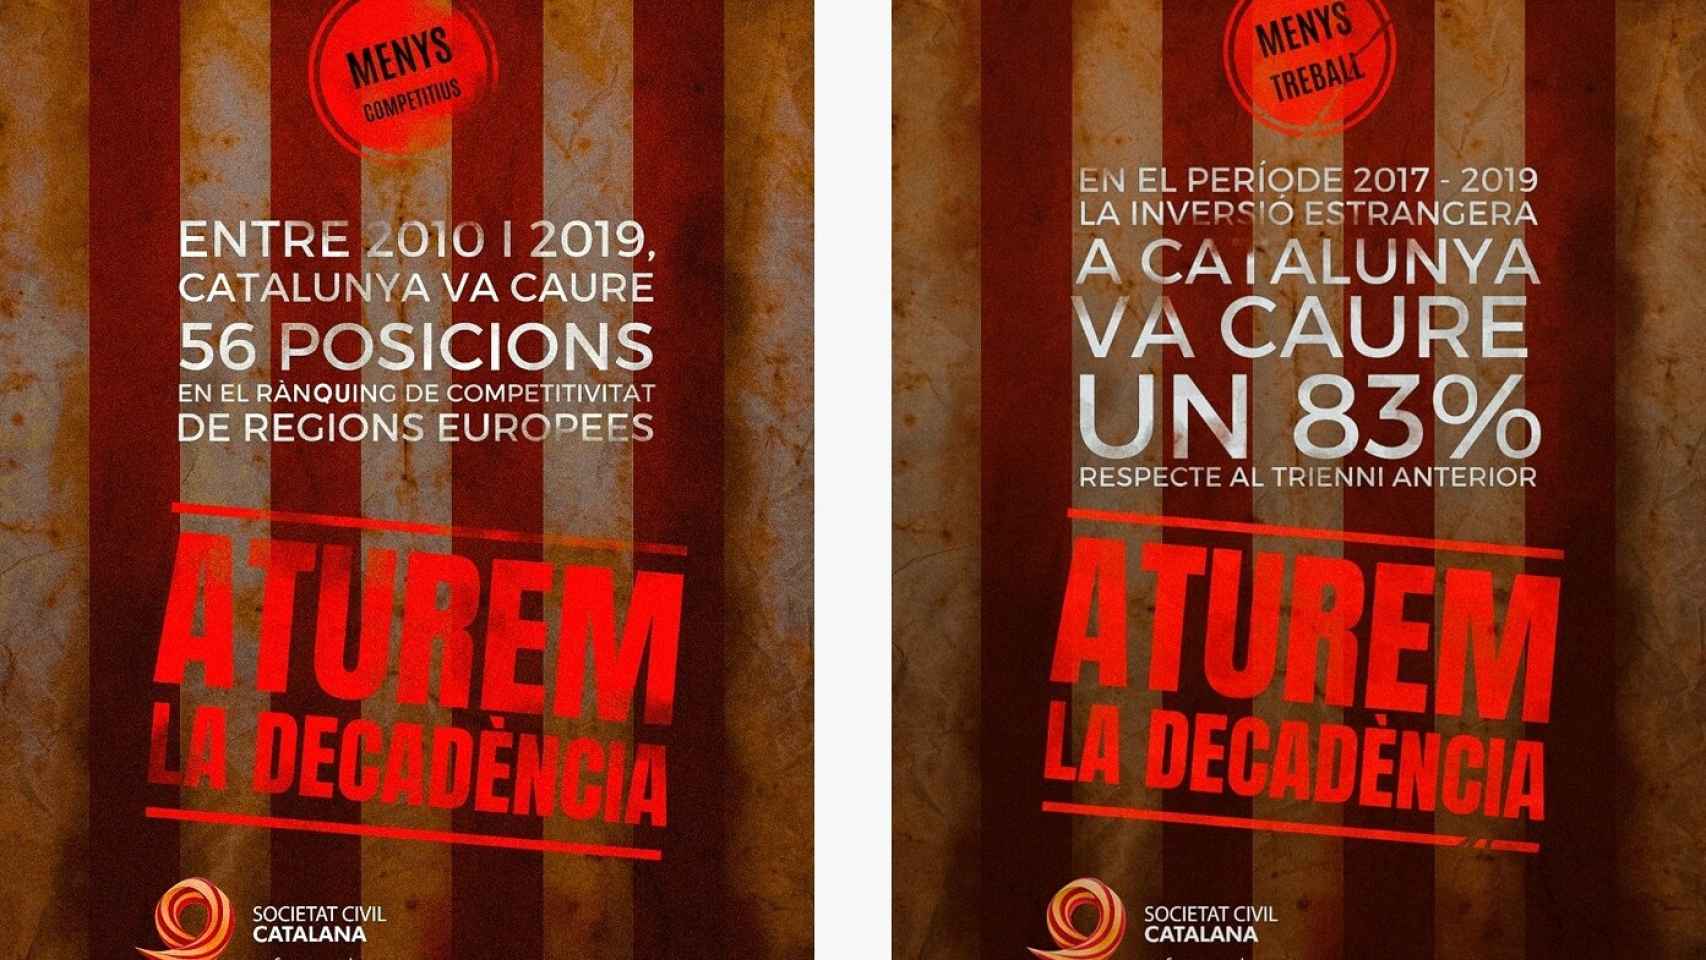 Carteles utilizados por Societat Civil Catalana para su campaña.